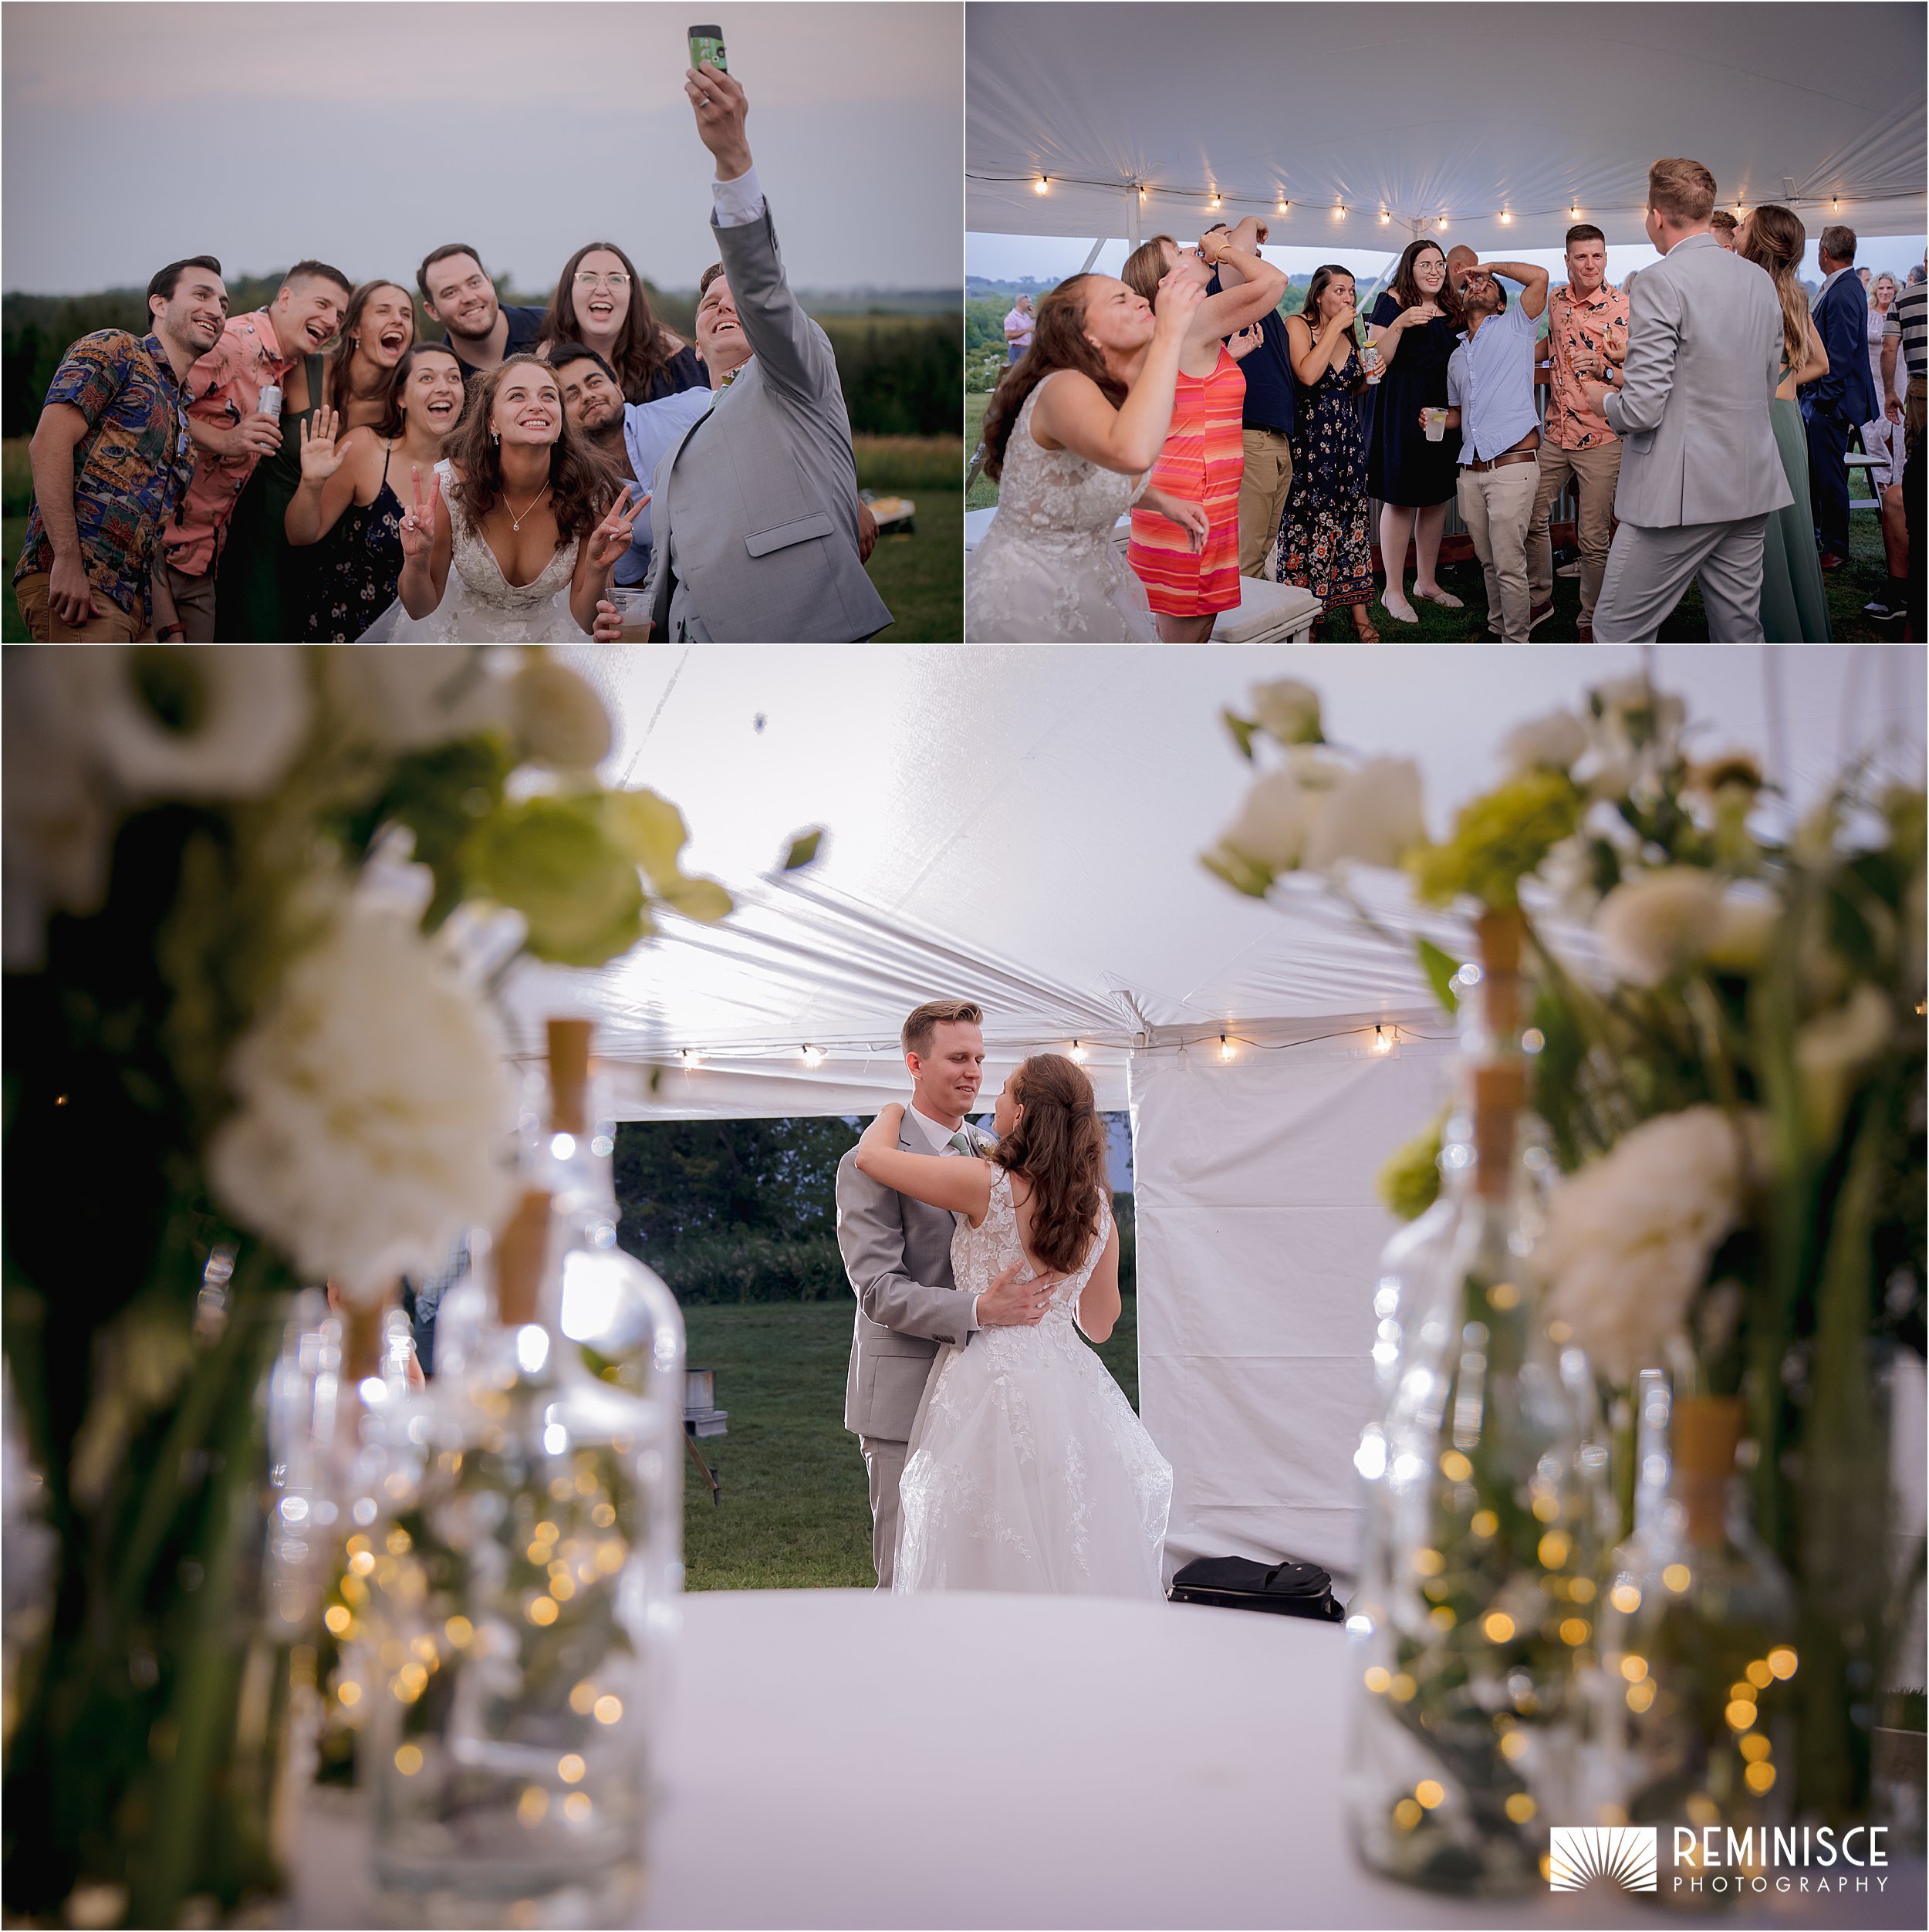 21-outdoor-ceremony-tented-reception-bride-groom-wedding-party.JPG